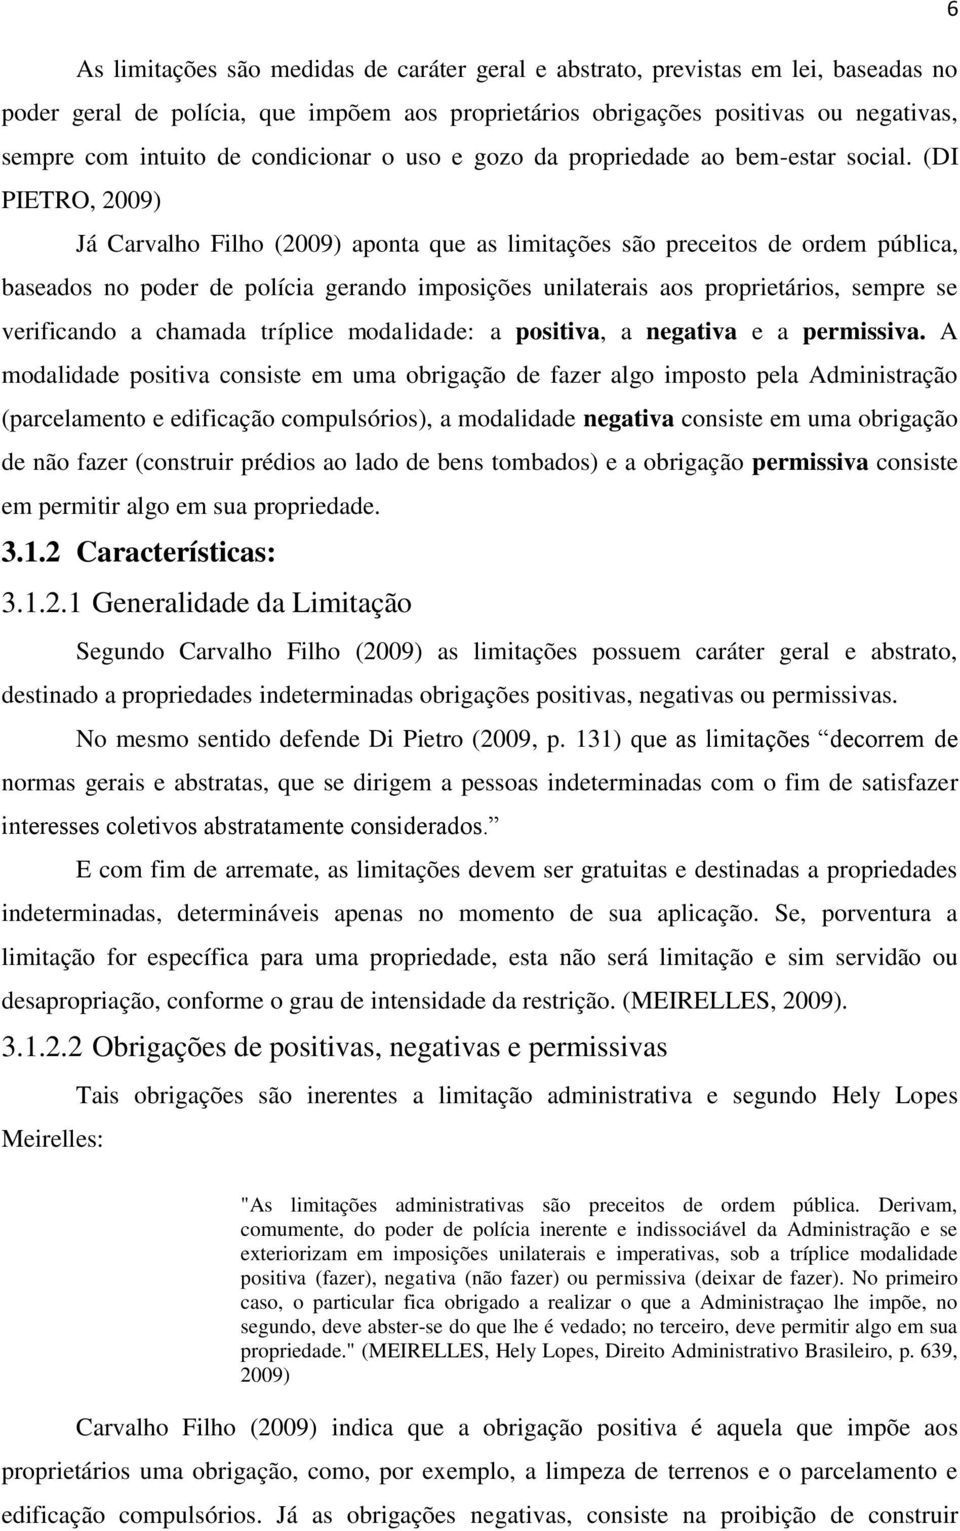 (DI PIETRO, 2009) Já Carvalho Filho (2009) aponta que as limitações são preceitos de ordem pública, baseados no poder de polícia gerando imposições unilaterais aos proprietários, sempre se